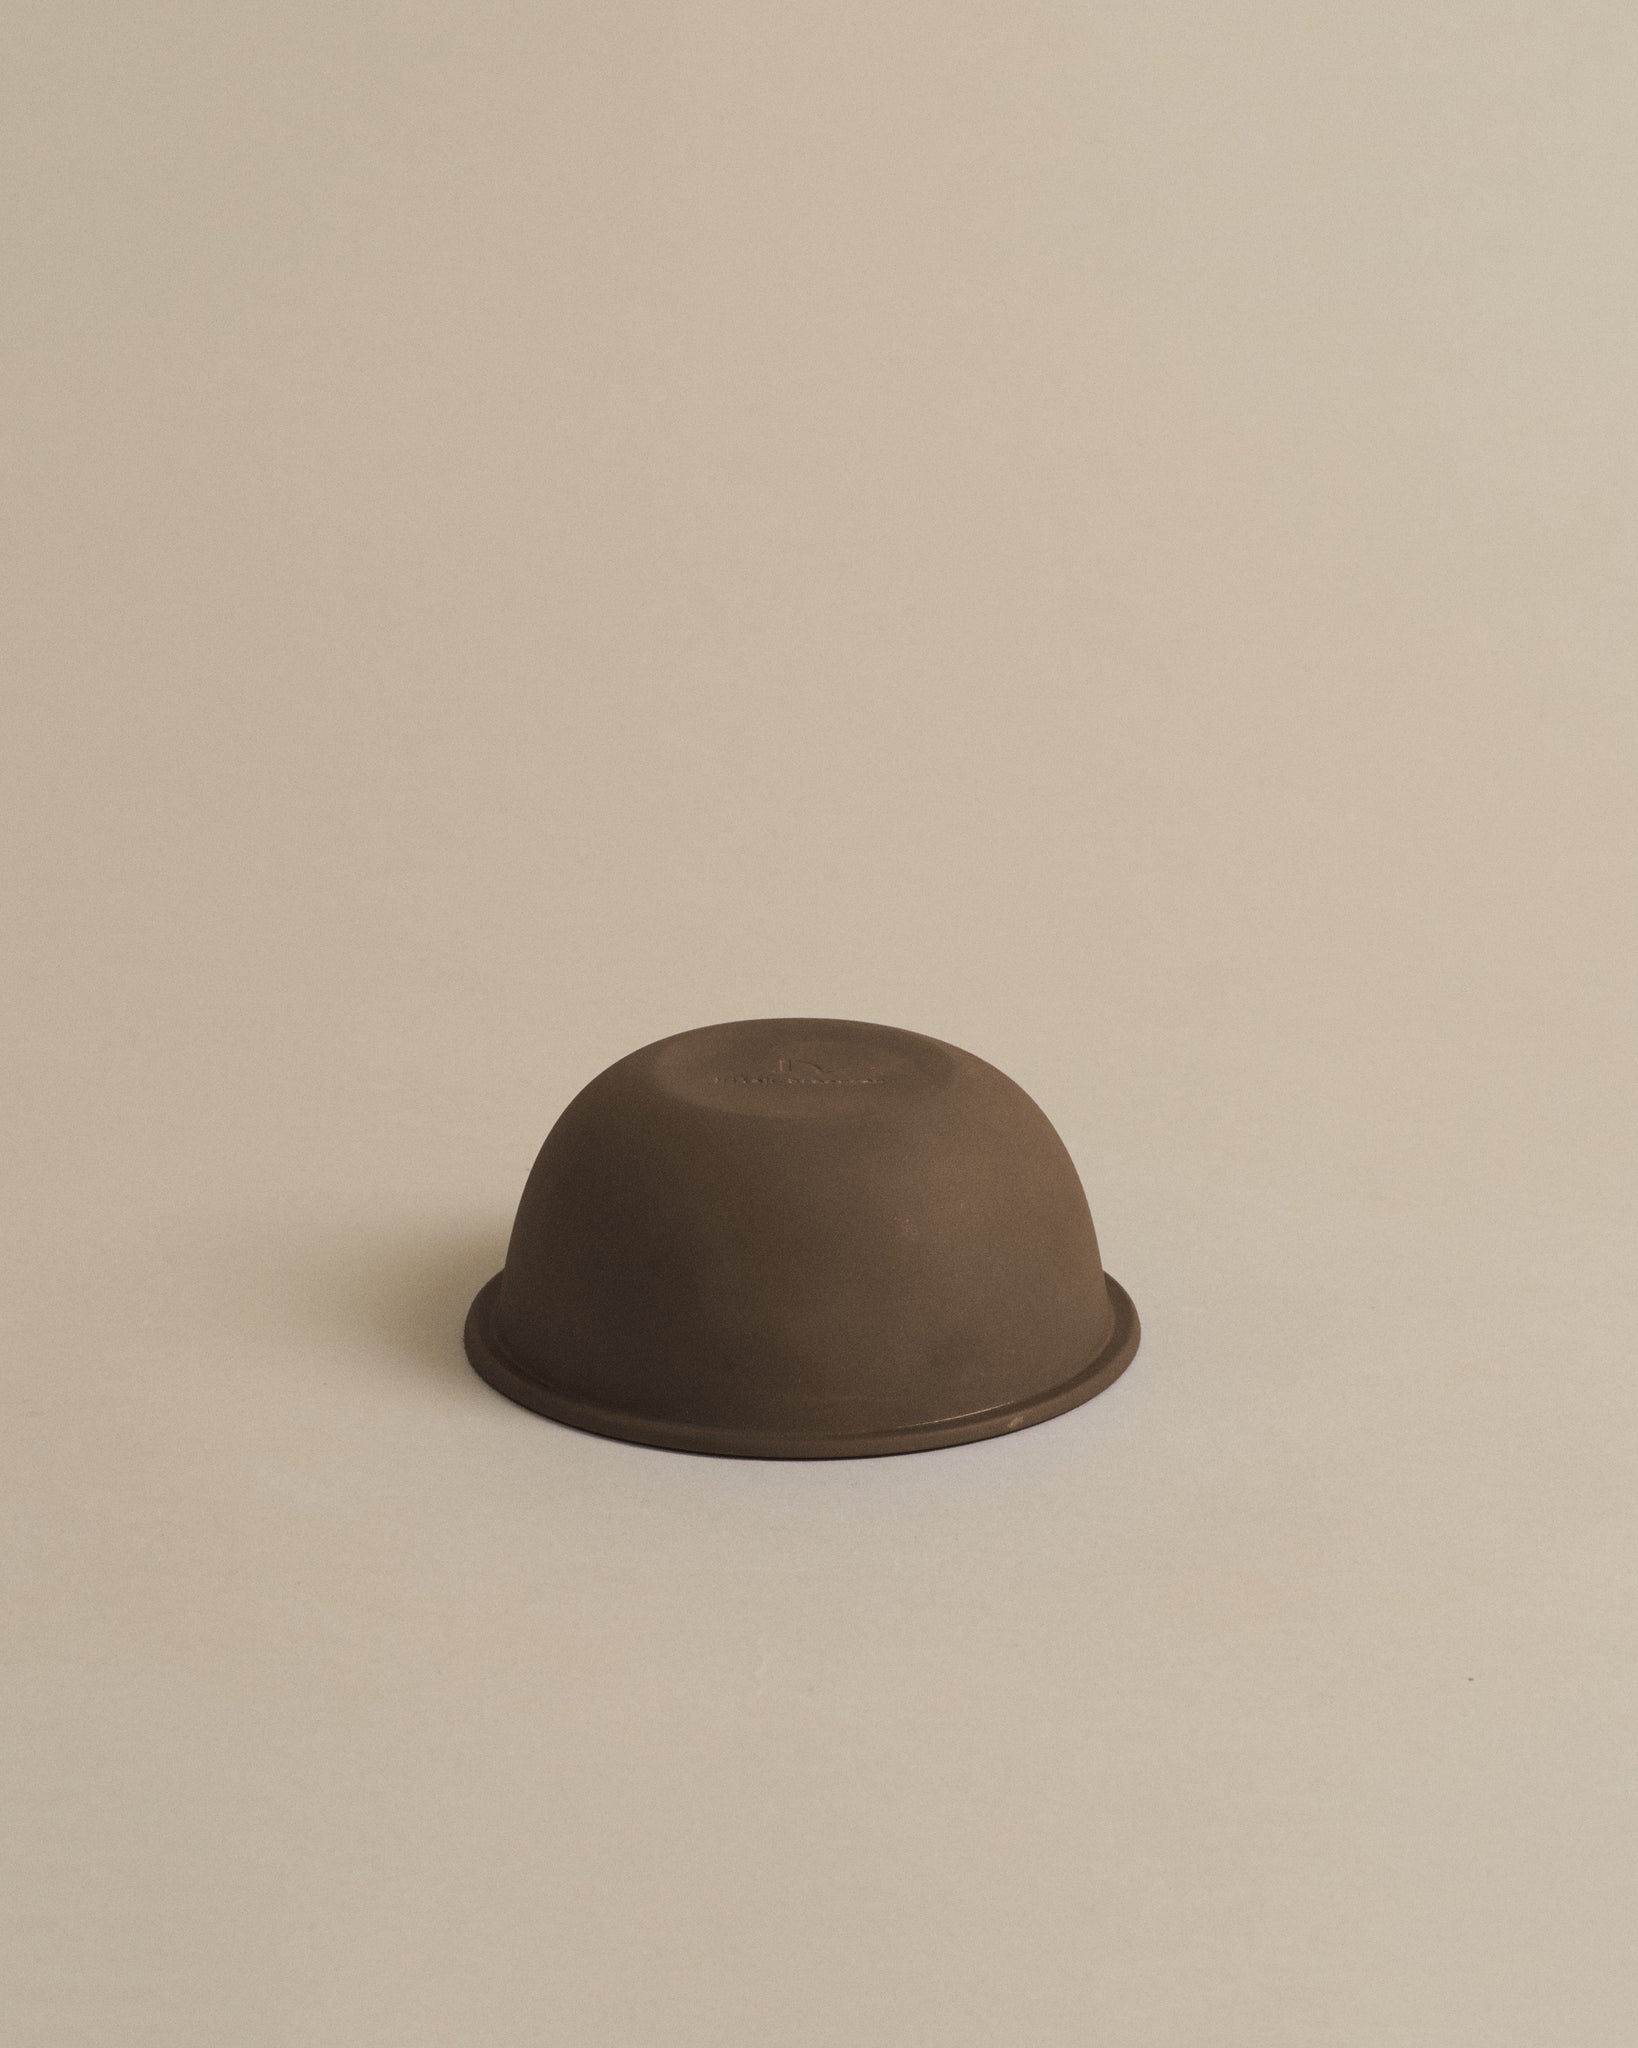 Rim Bowl Small - Cocoa